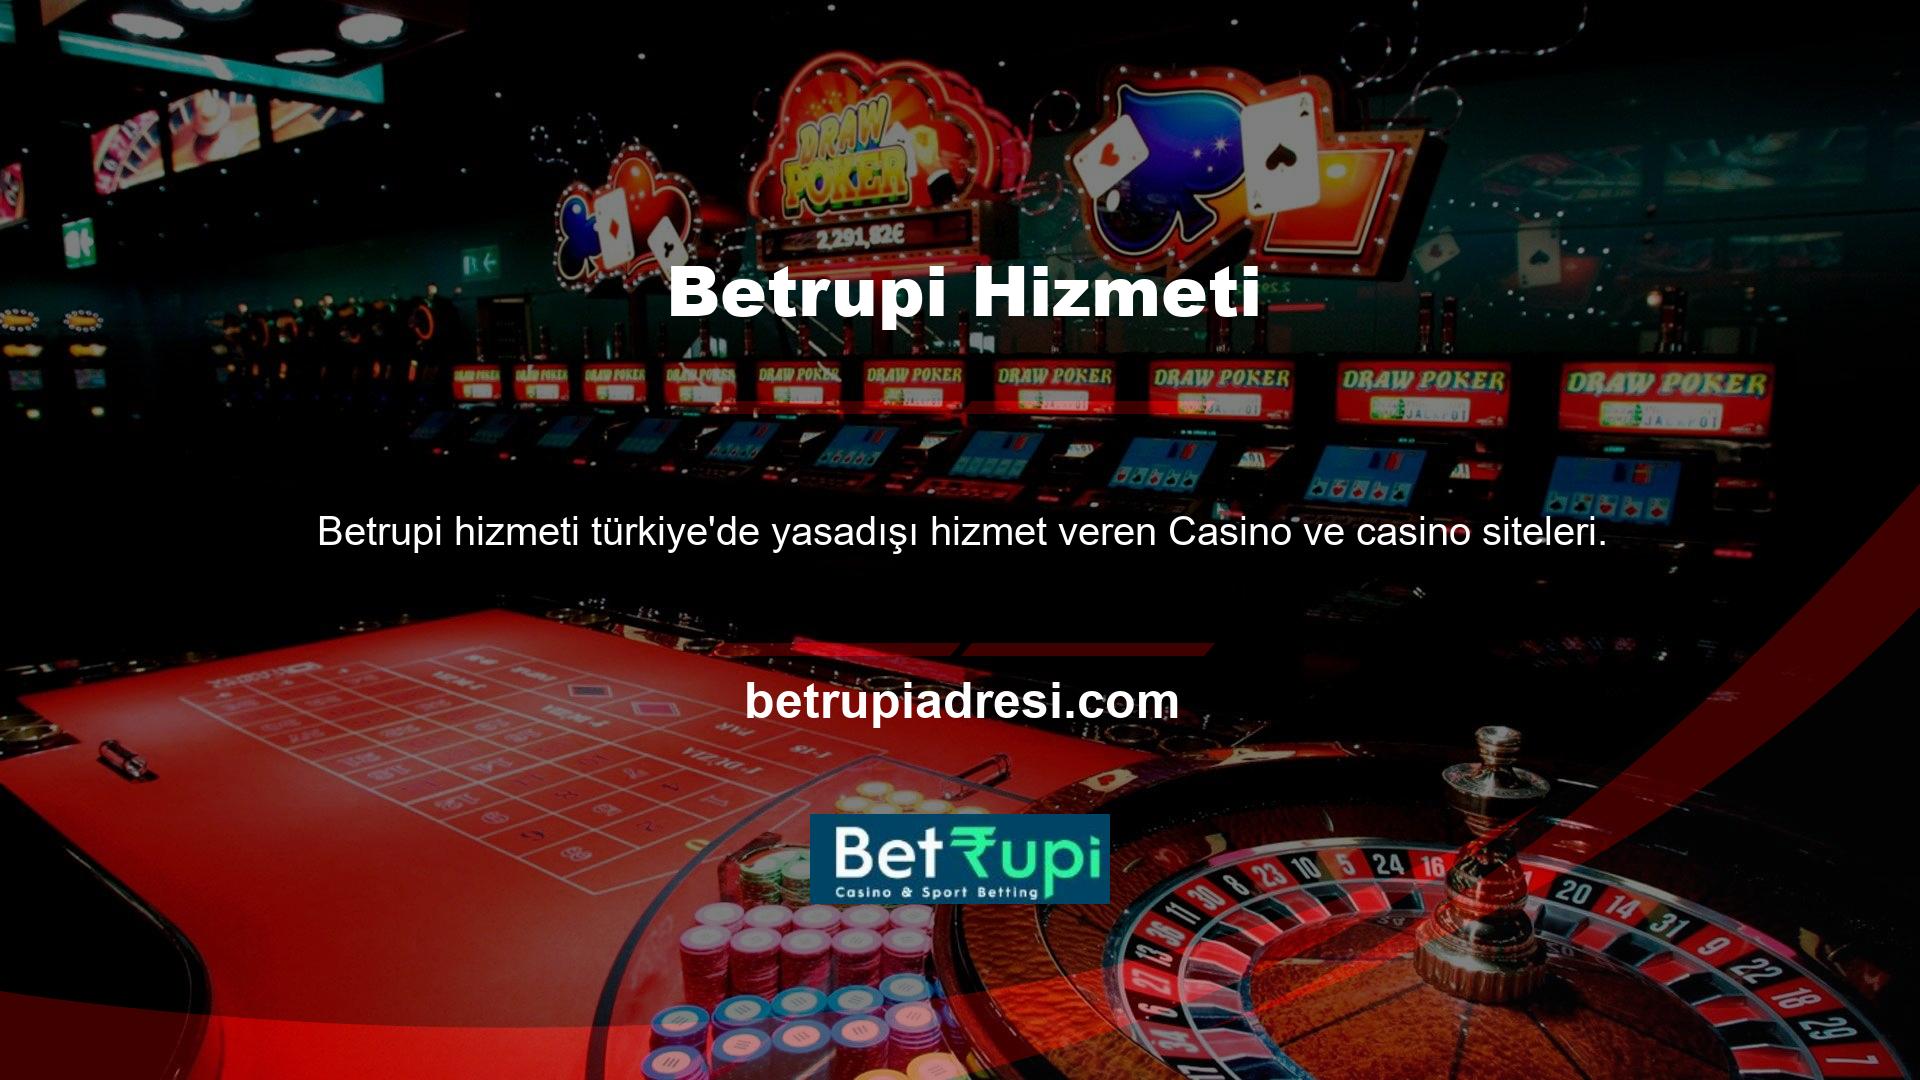 Bu platformlardan biri olan Betrupi, yerel Casino meraklılarına yasa dışı hizmetler sunmaktadır